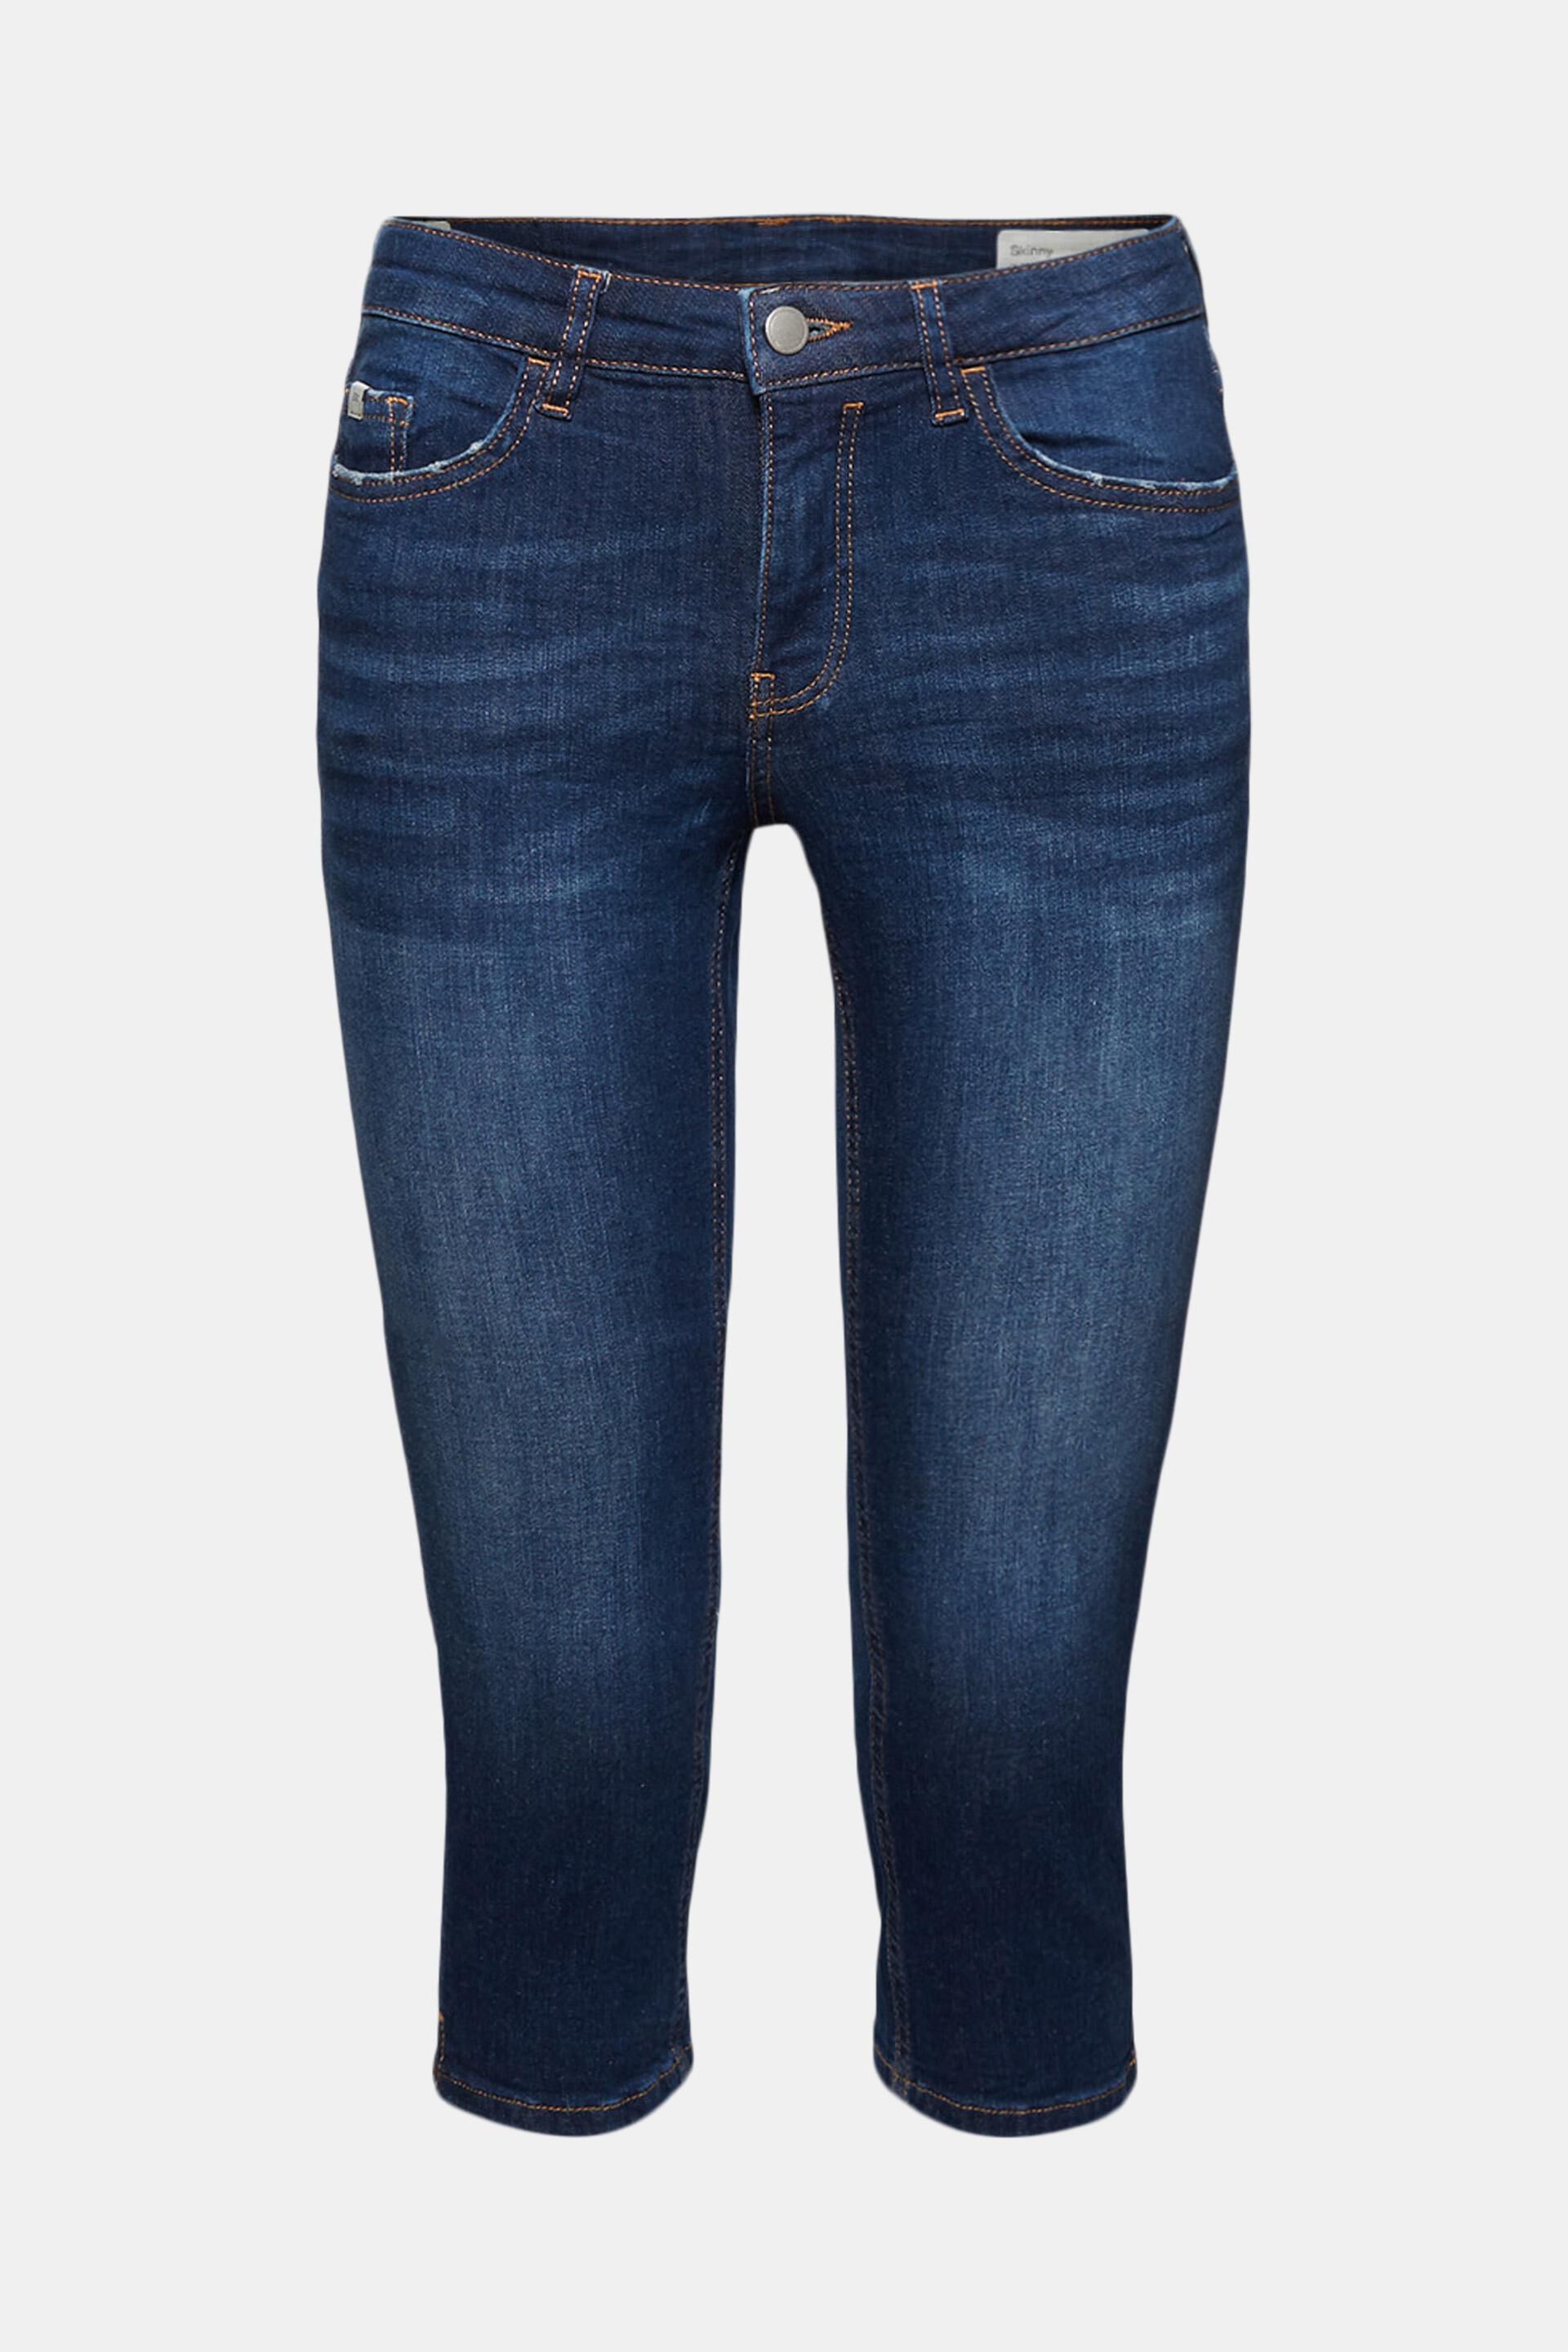 Esprit Capri-Jeans Bio-Baumwolle aus